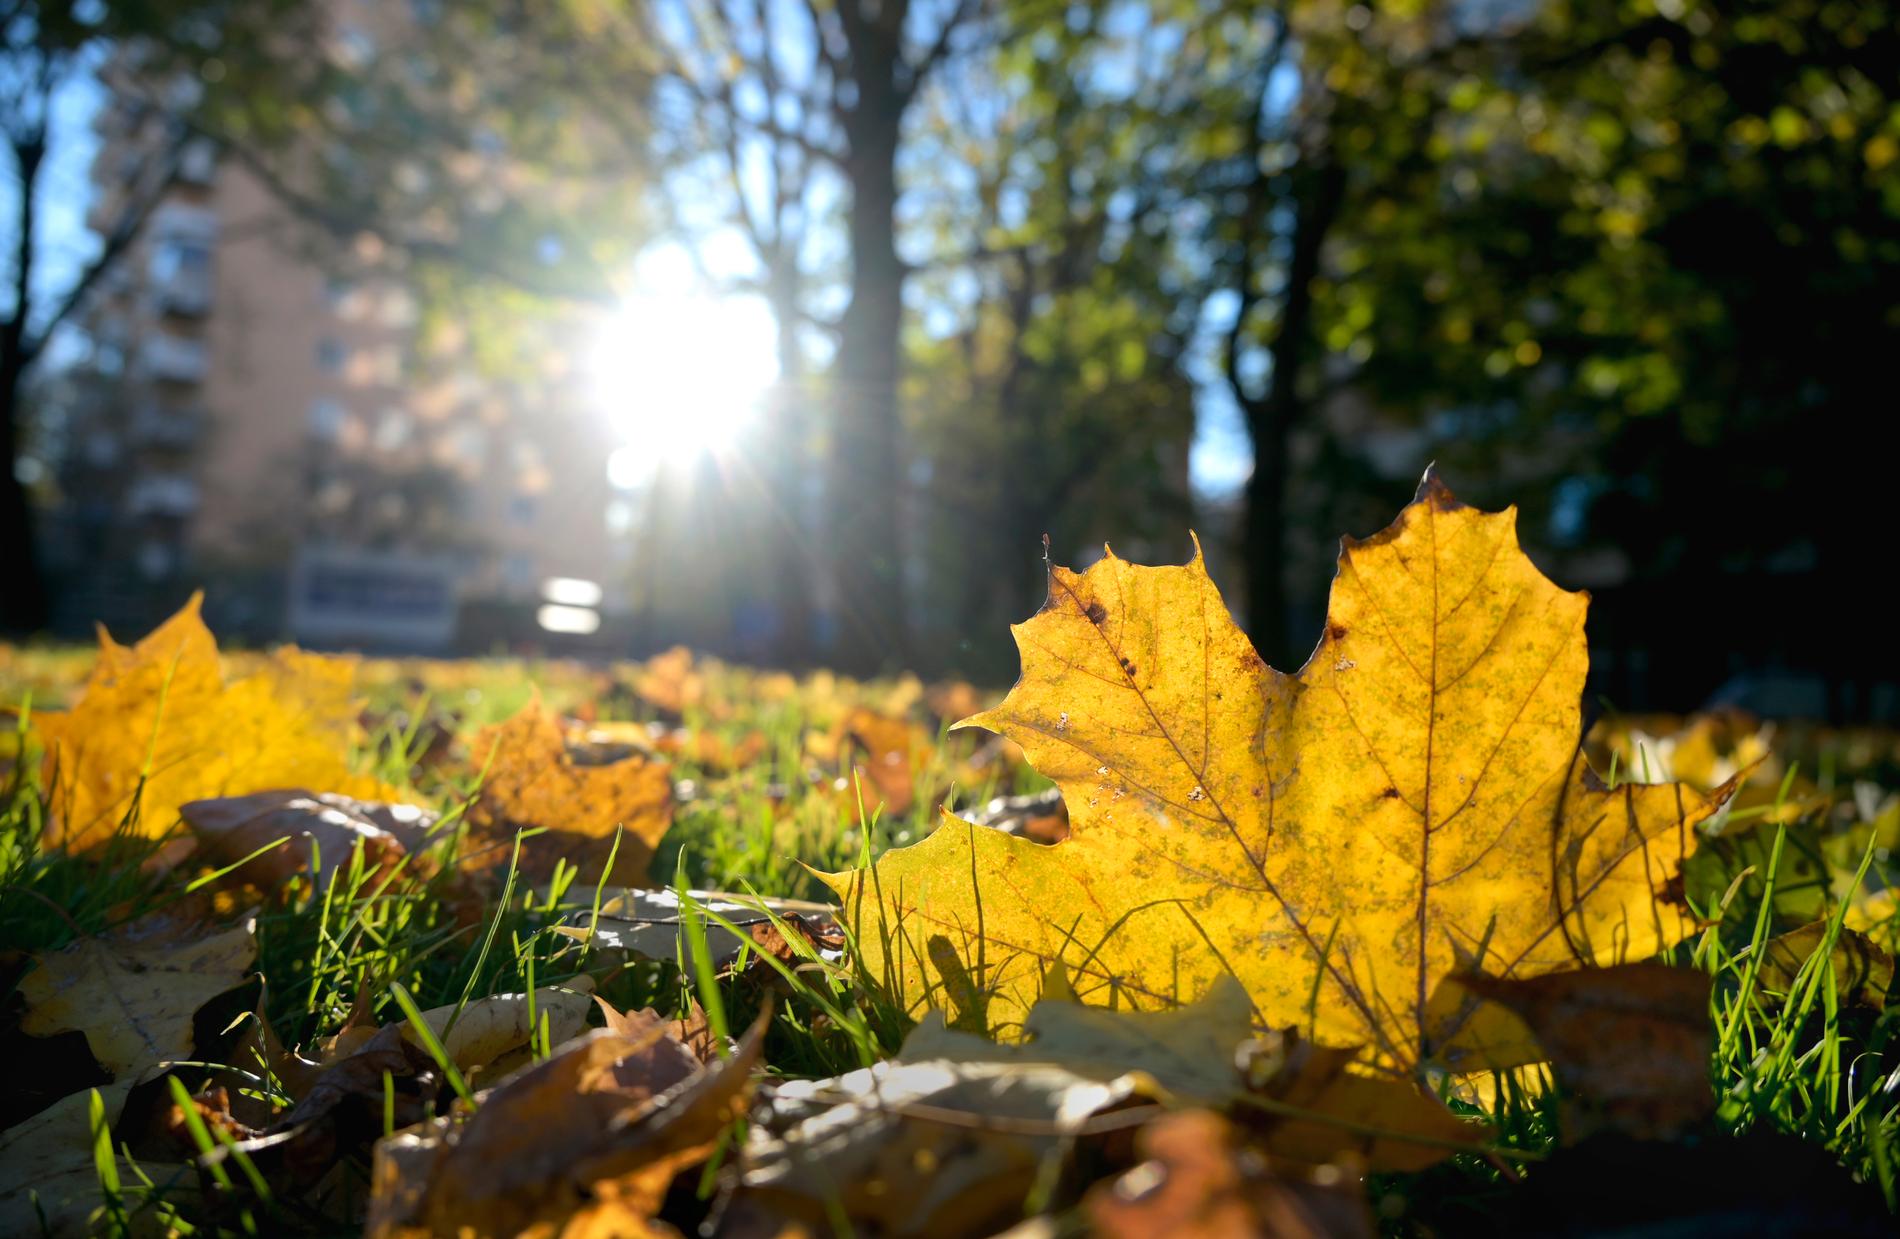 När den meteorologiska hösten kan tänkas komma till södra Sverige är oklart enligt SMHI:s meteorolog.